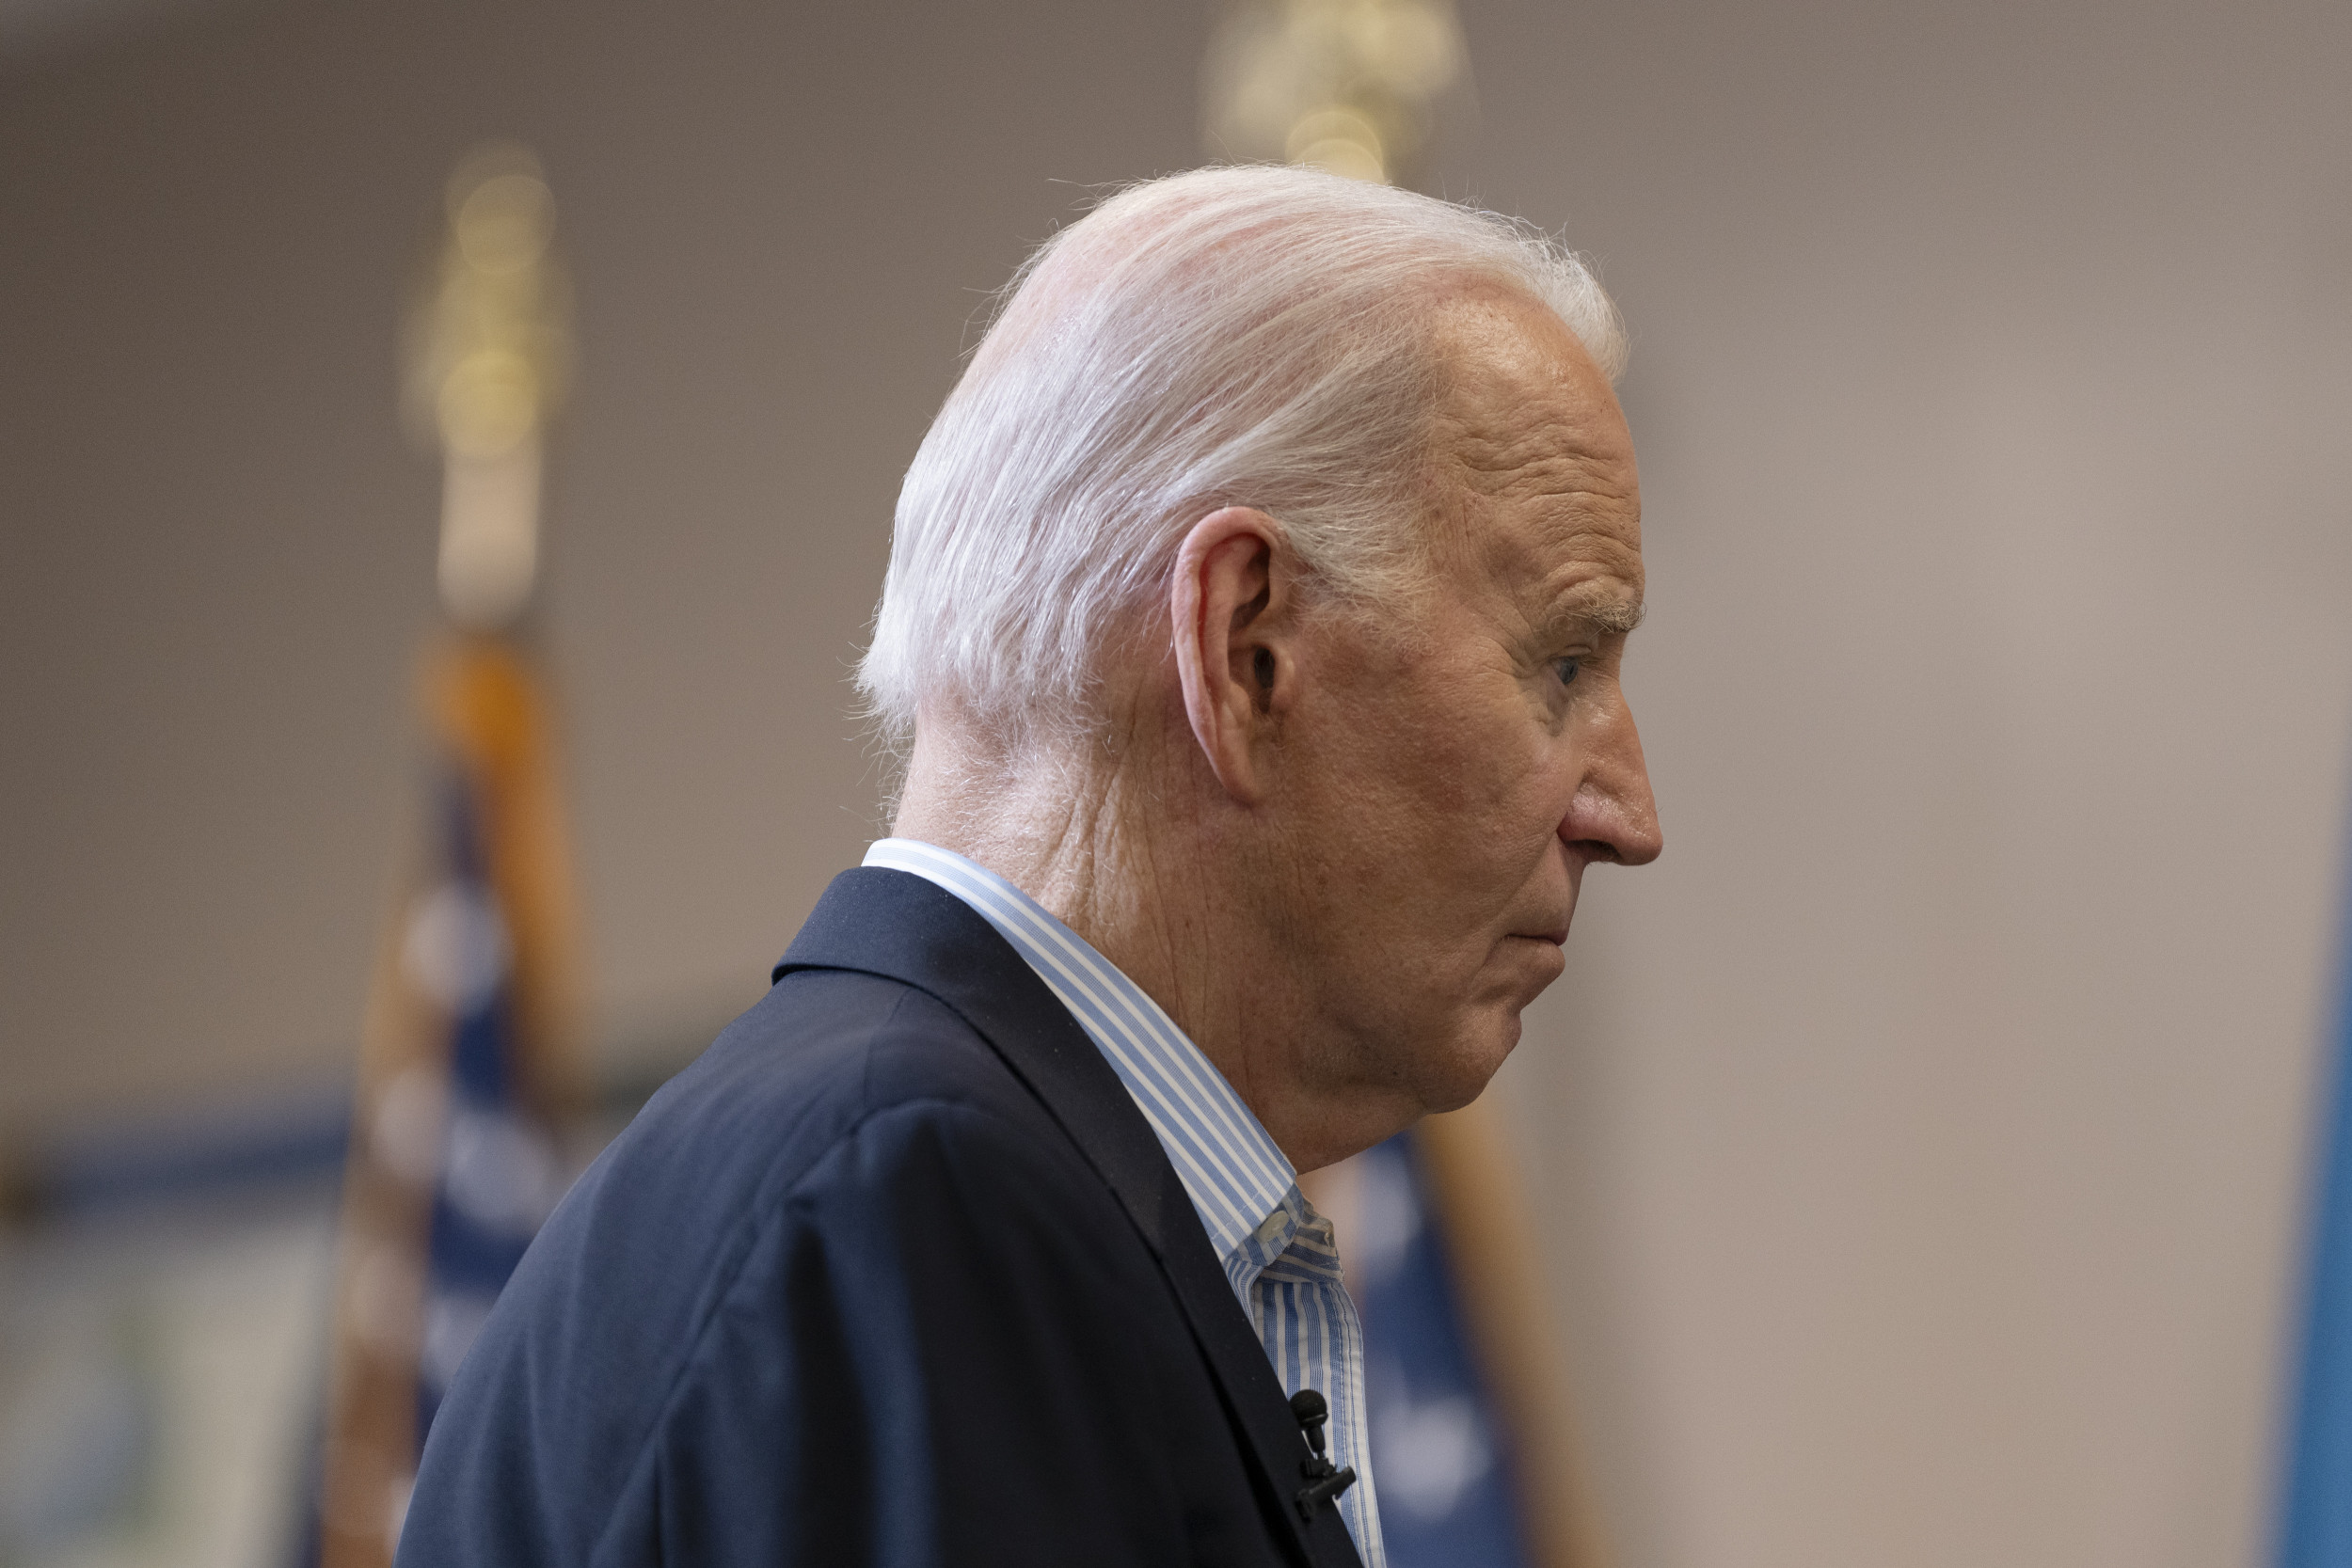 La baisse des passages de migrants n’offre que peu d’espoir à Joe Biden, selon un analyste